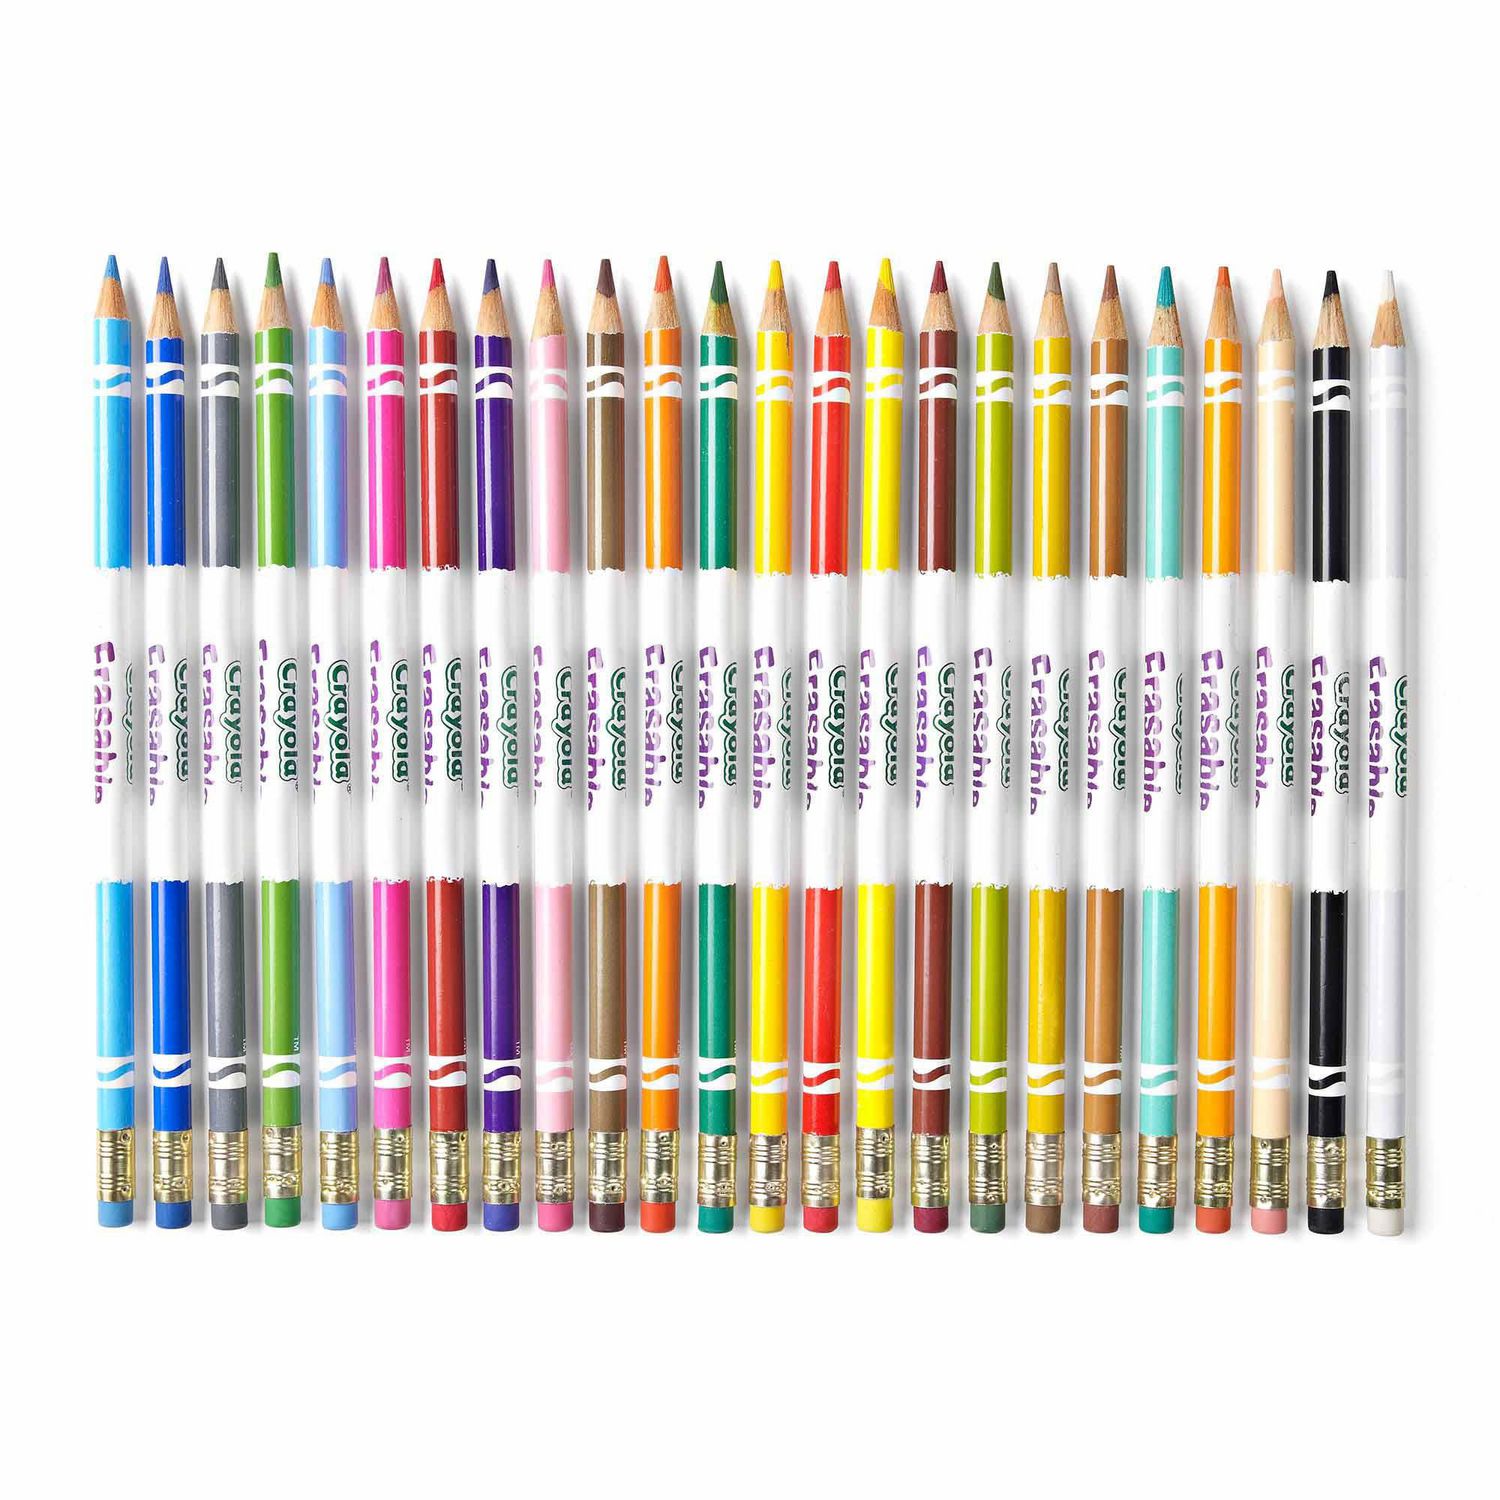 Crayola lance une ligne de crayon avec toutes les couleurs de peau